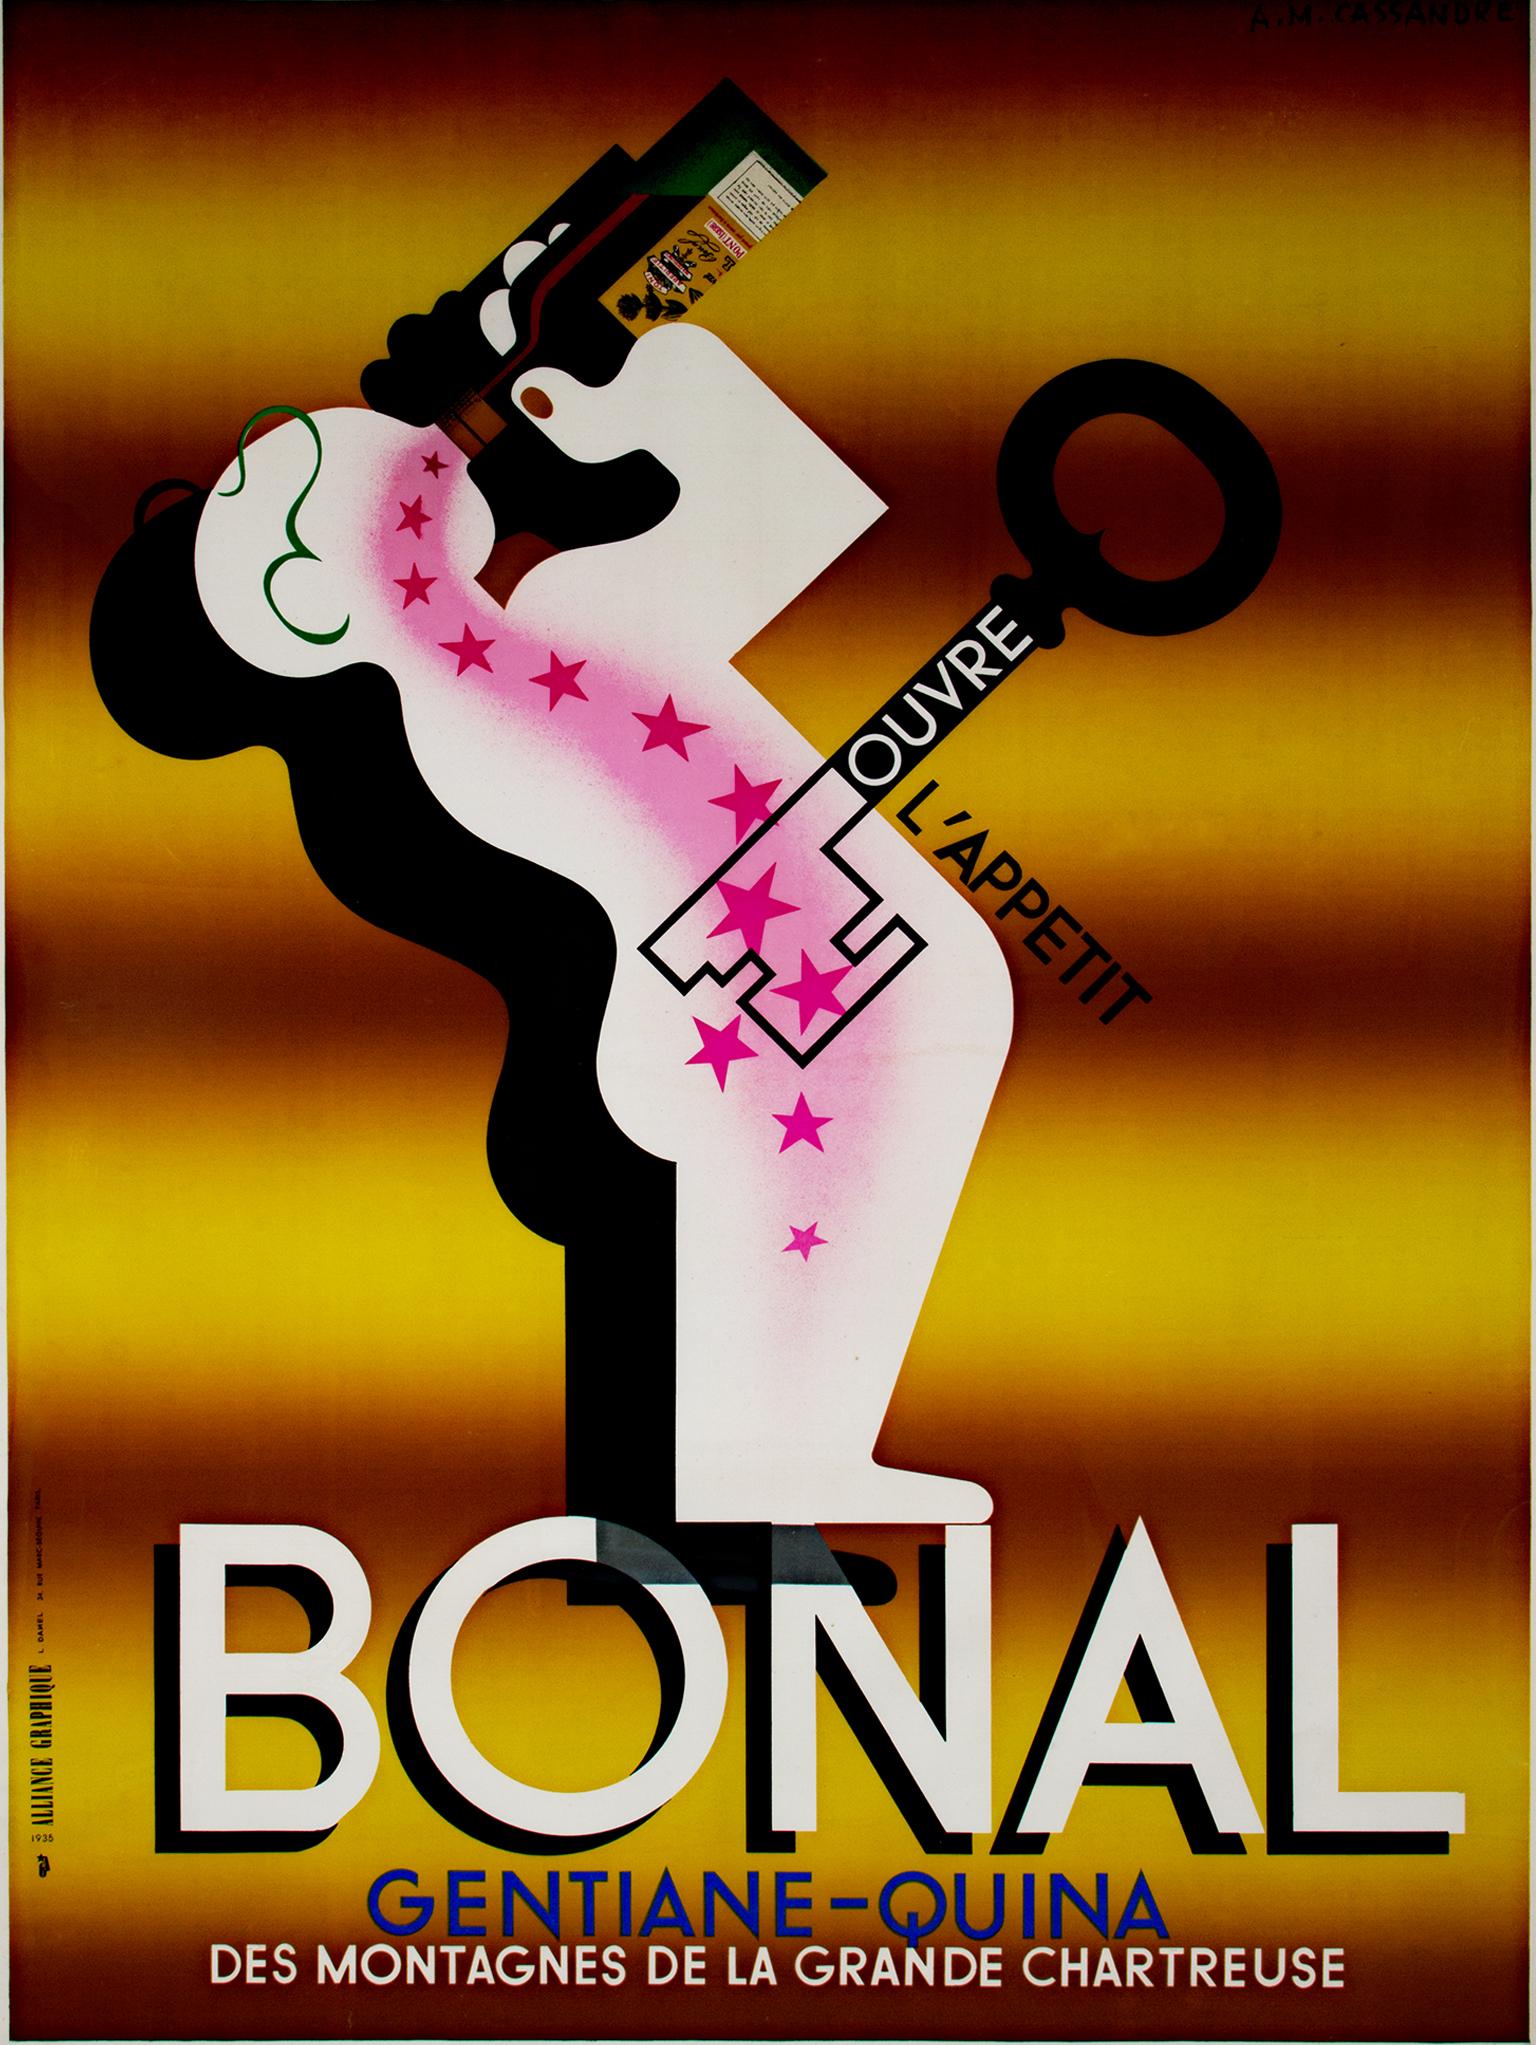 "Bonal" ist ein original lithografiertes Plakat von Adolphe Mouron Cassandre. Es zeigt eine abstrahierte Figur, die Bonal Gentiane Quina trinkt, einen Cocktail oder Aperitif, der, vor einer Mahlzeit getrunken, den Appetit anregt. Diese Figur steht